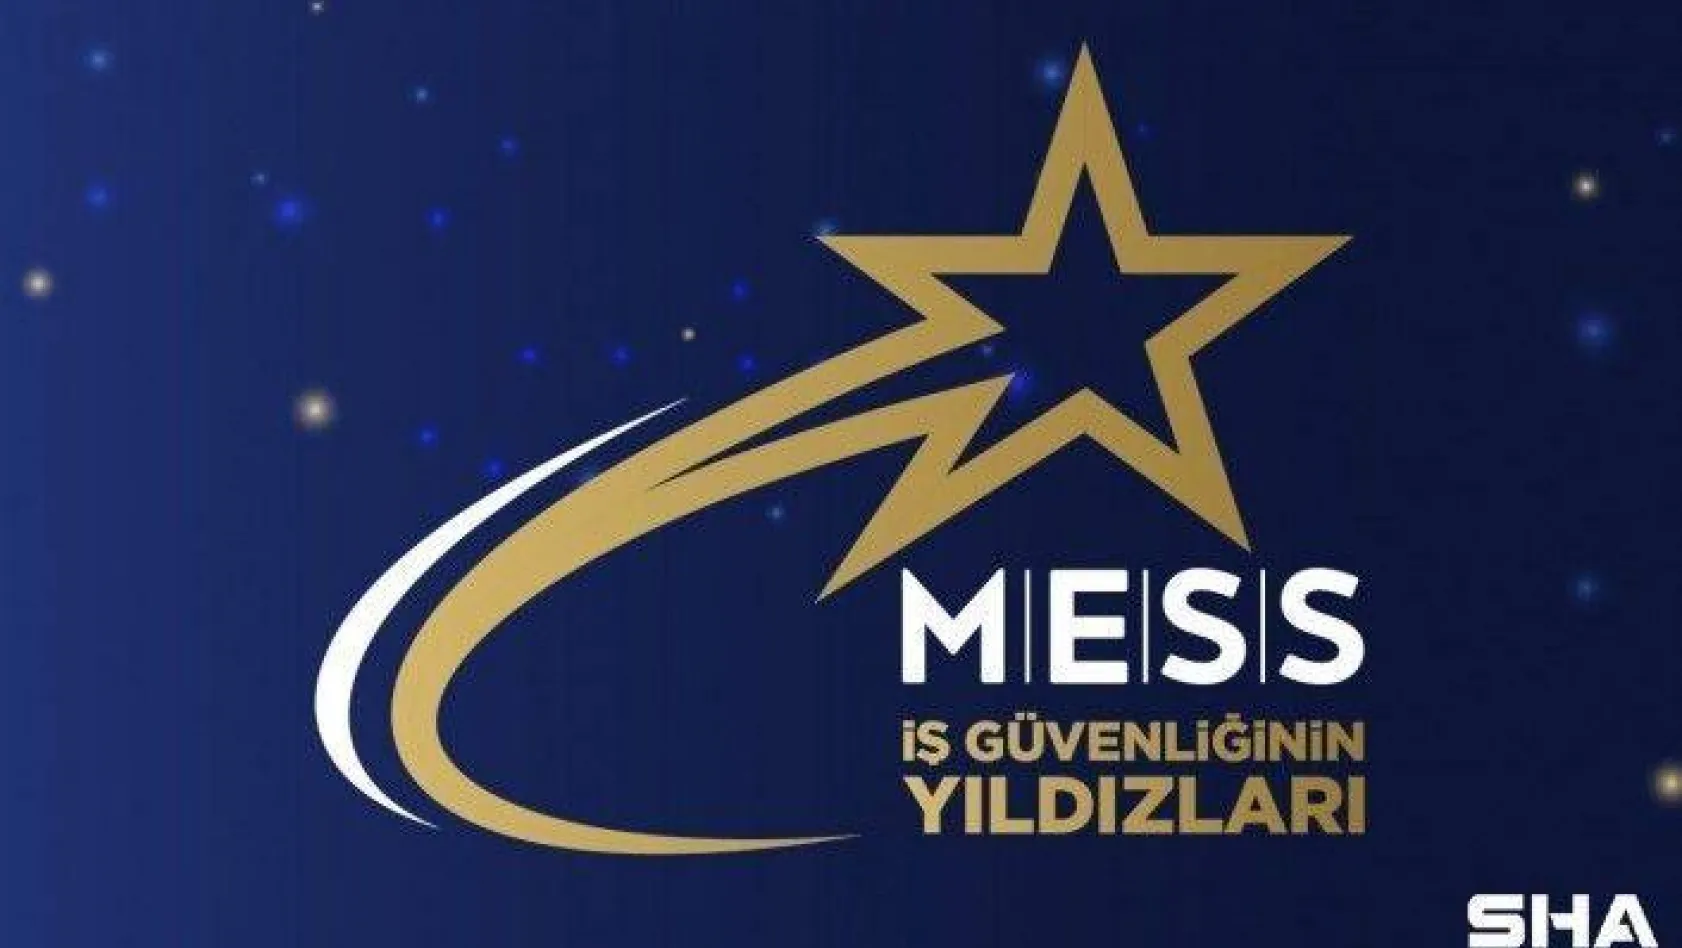 Siemens Türkiye'ye MESS'ten iş güvenliği ödülü